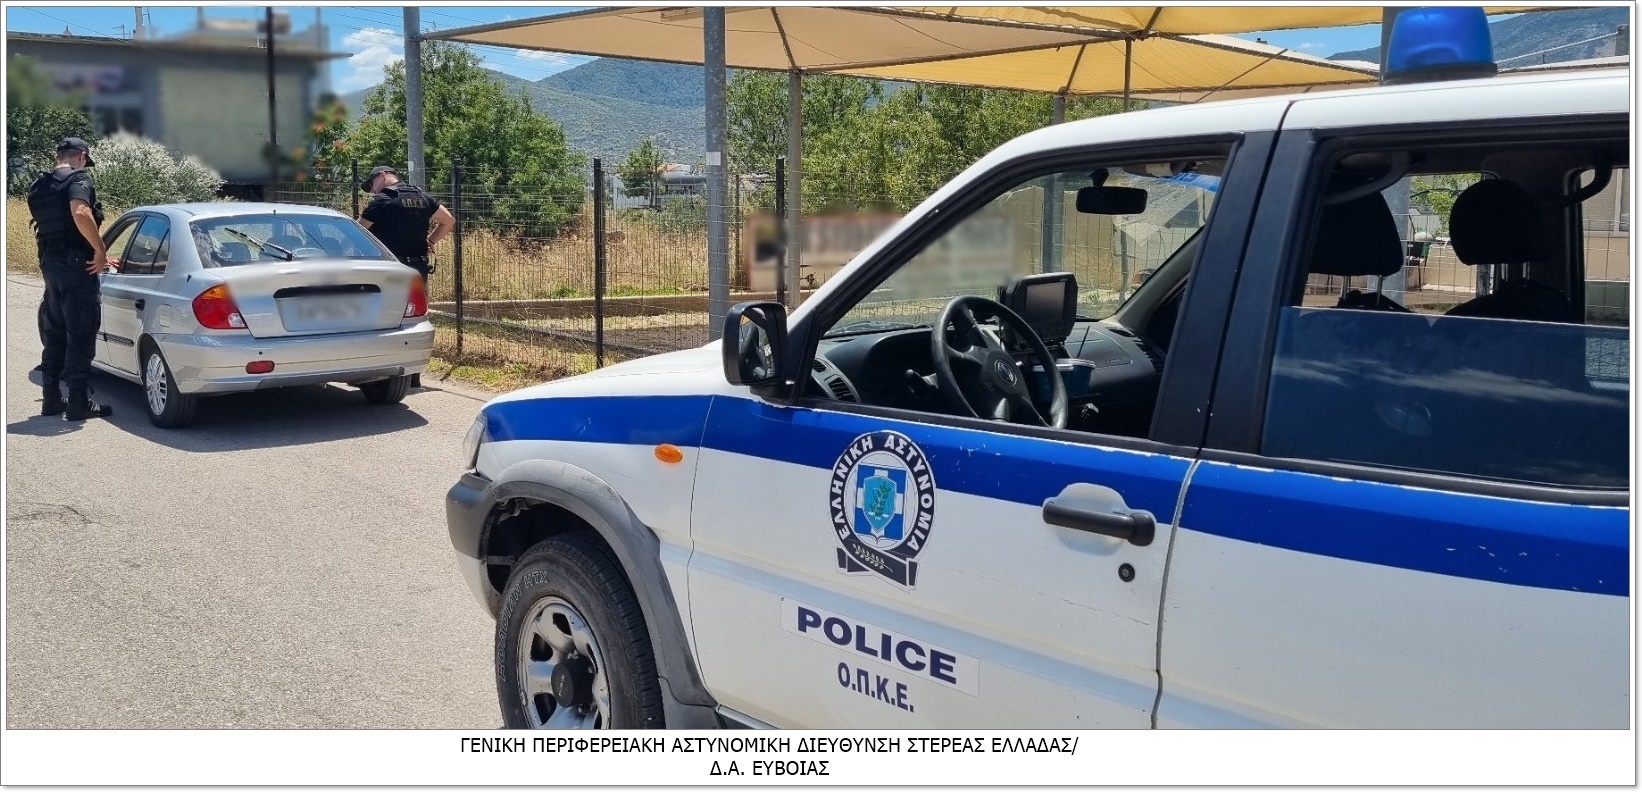 Εύβοια: Αυτές οι συλλήψεις από την ΕΛ.ΑΣ. για παραβάσεις του Κώδικα Οδικής Κυκλοφορίας